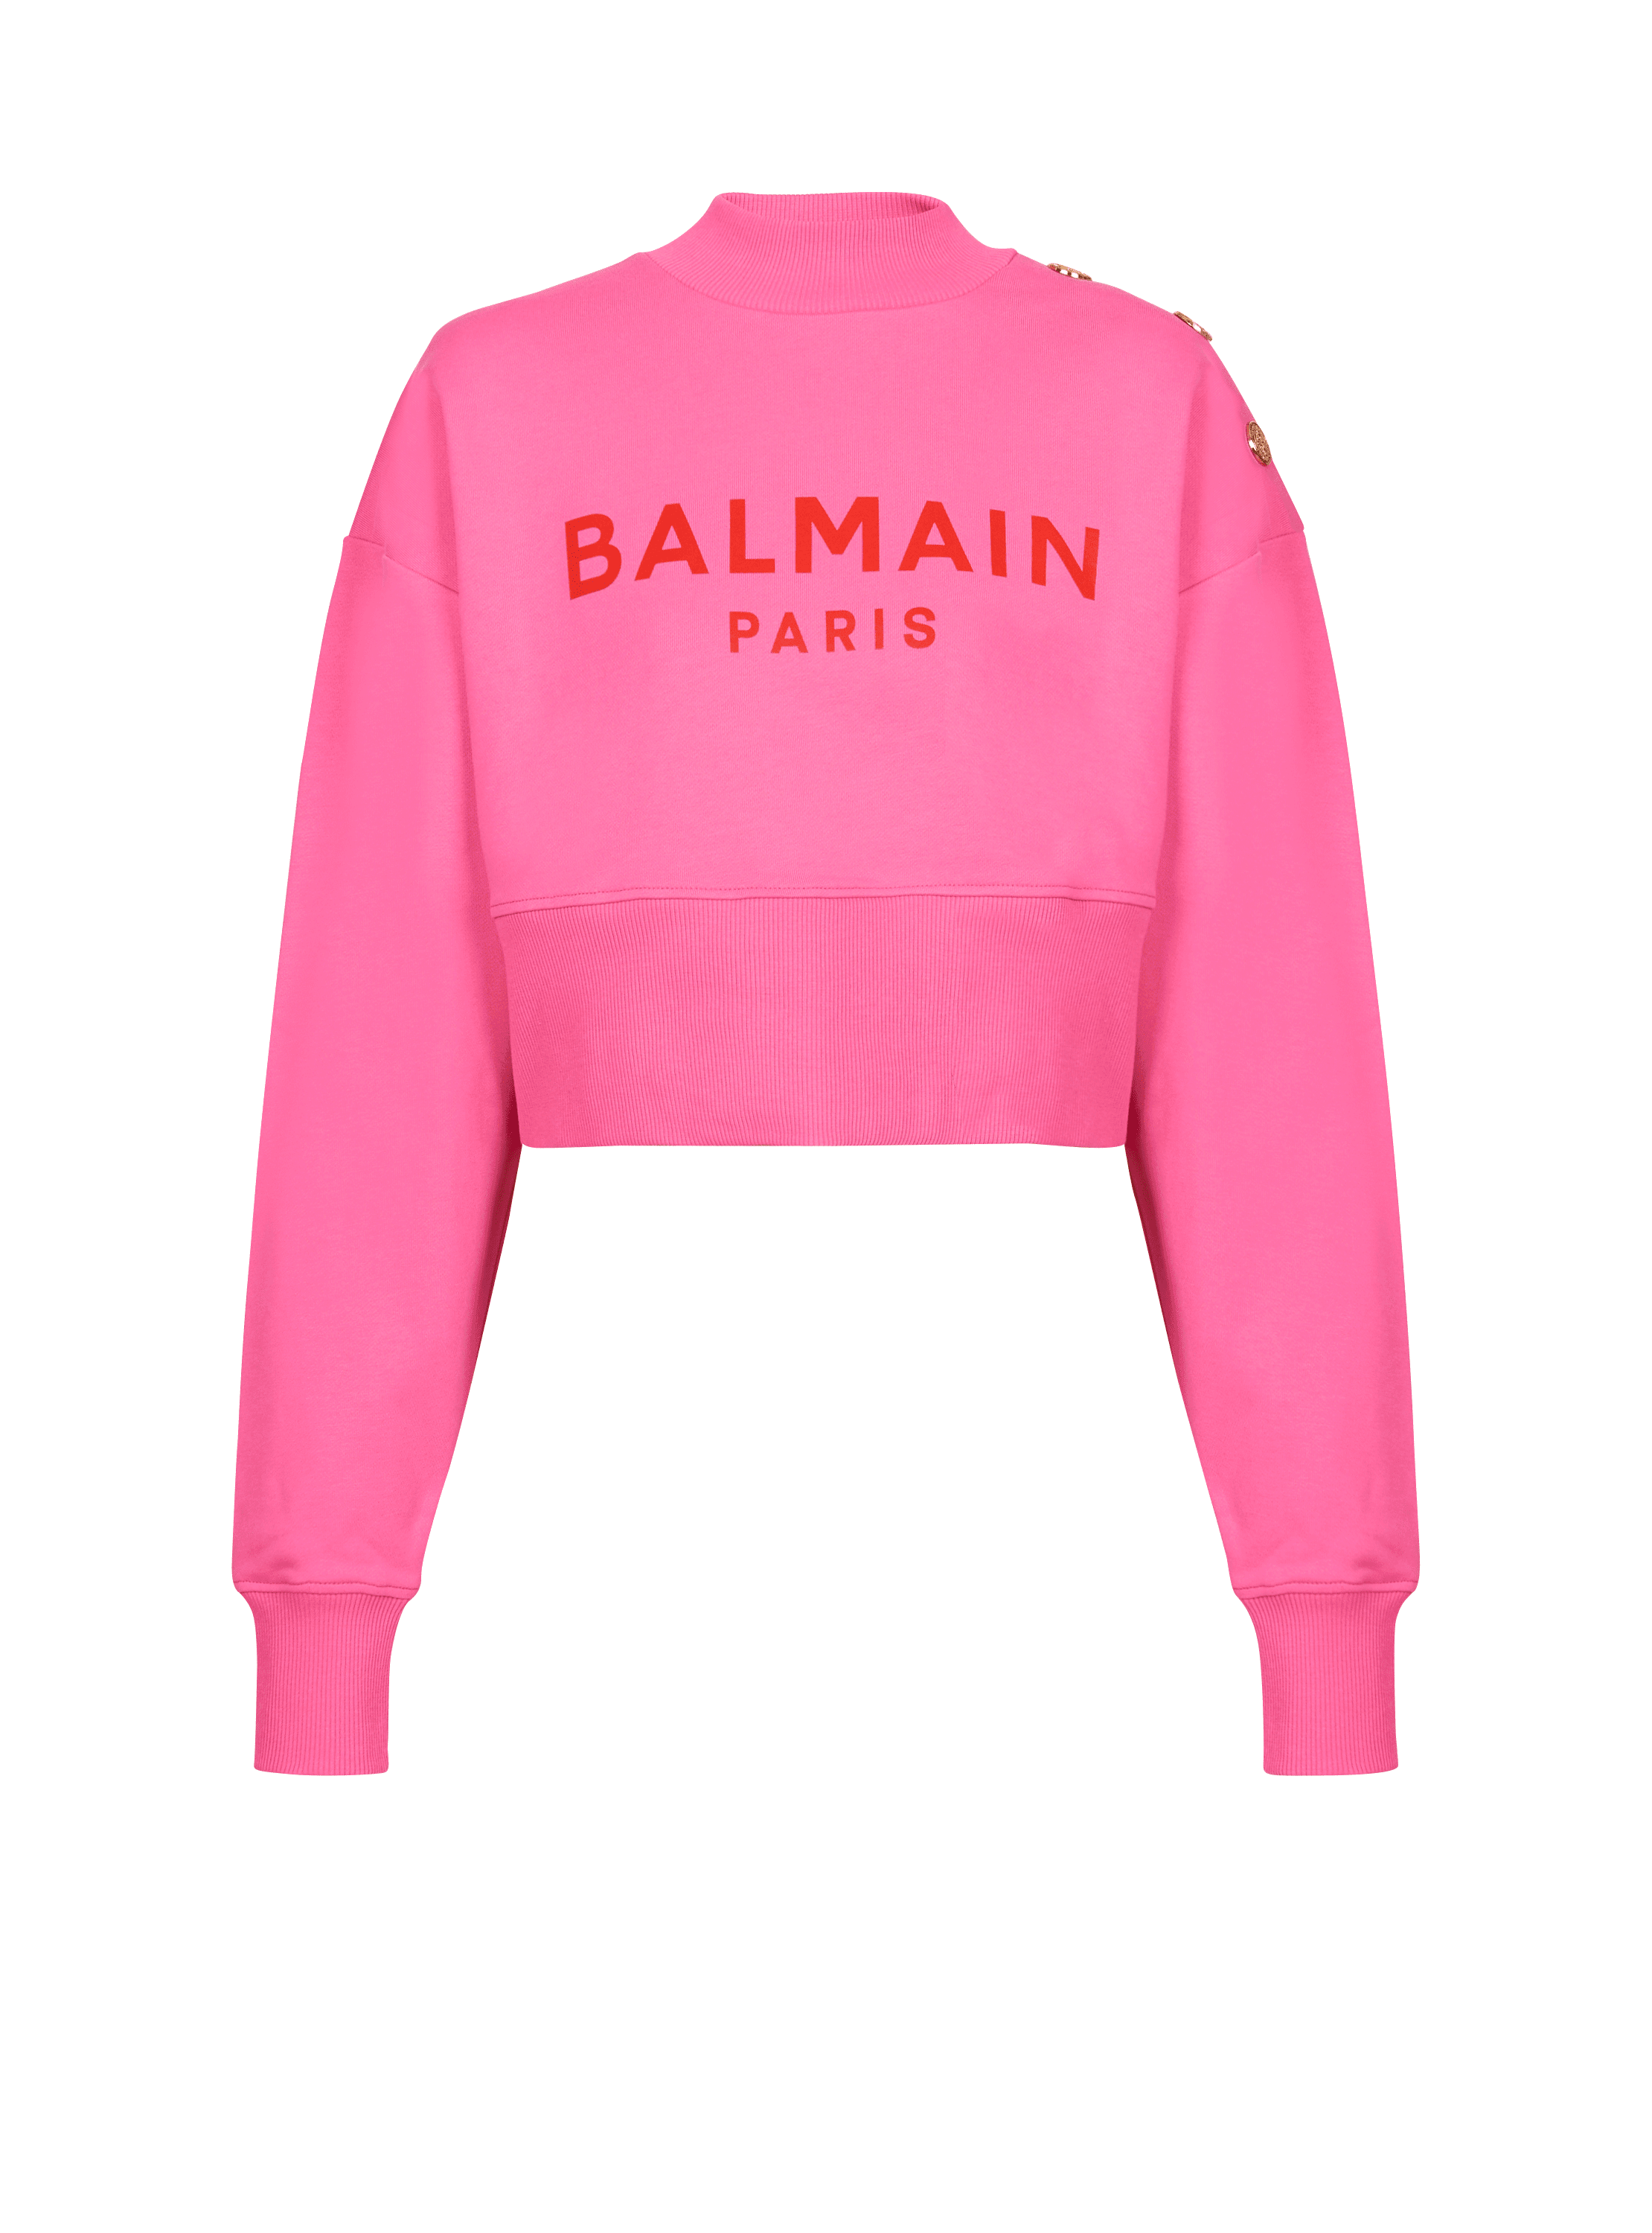 Balmain Paris 프린트 장식 크롭 스웨트셔츠